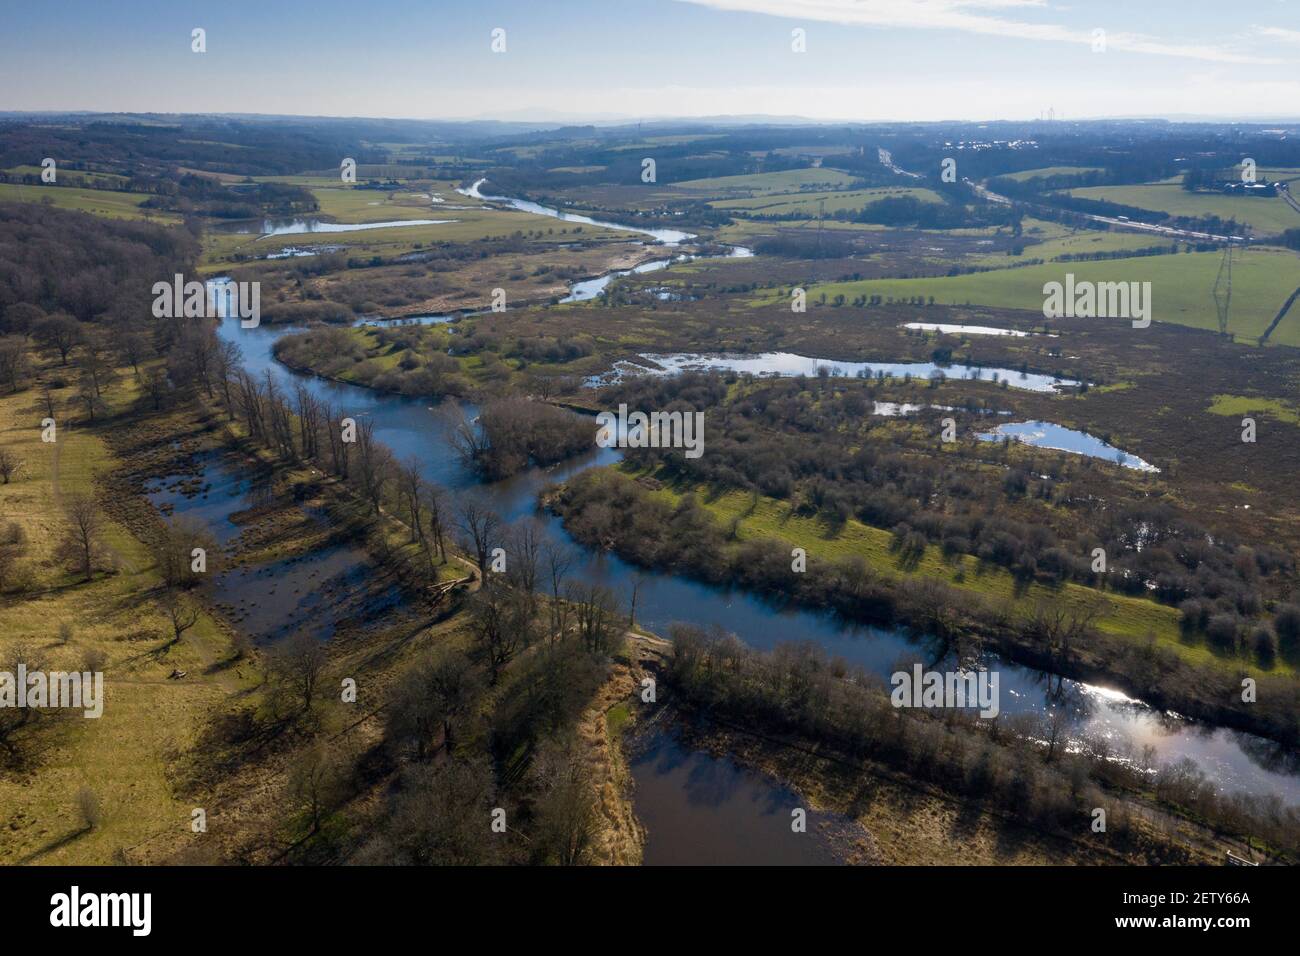 Vista aérea del río Clyde pasando por el parque de Dalzell Estate y la reserva natural de RSPB Baron's Haugh cerca de Motherwell, Lanarkshire del Norte,. Foto de stock